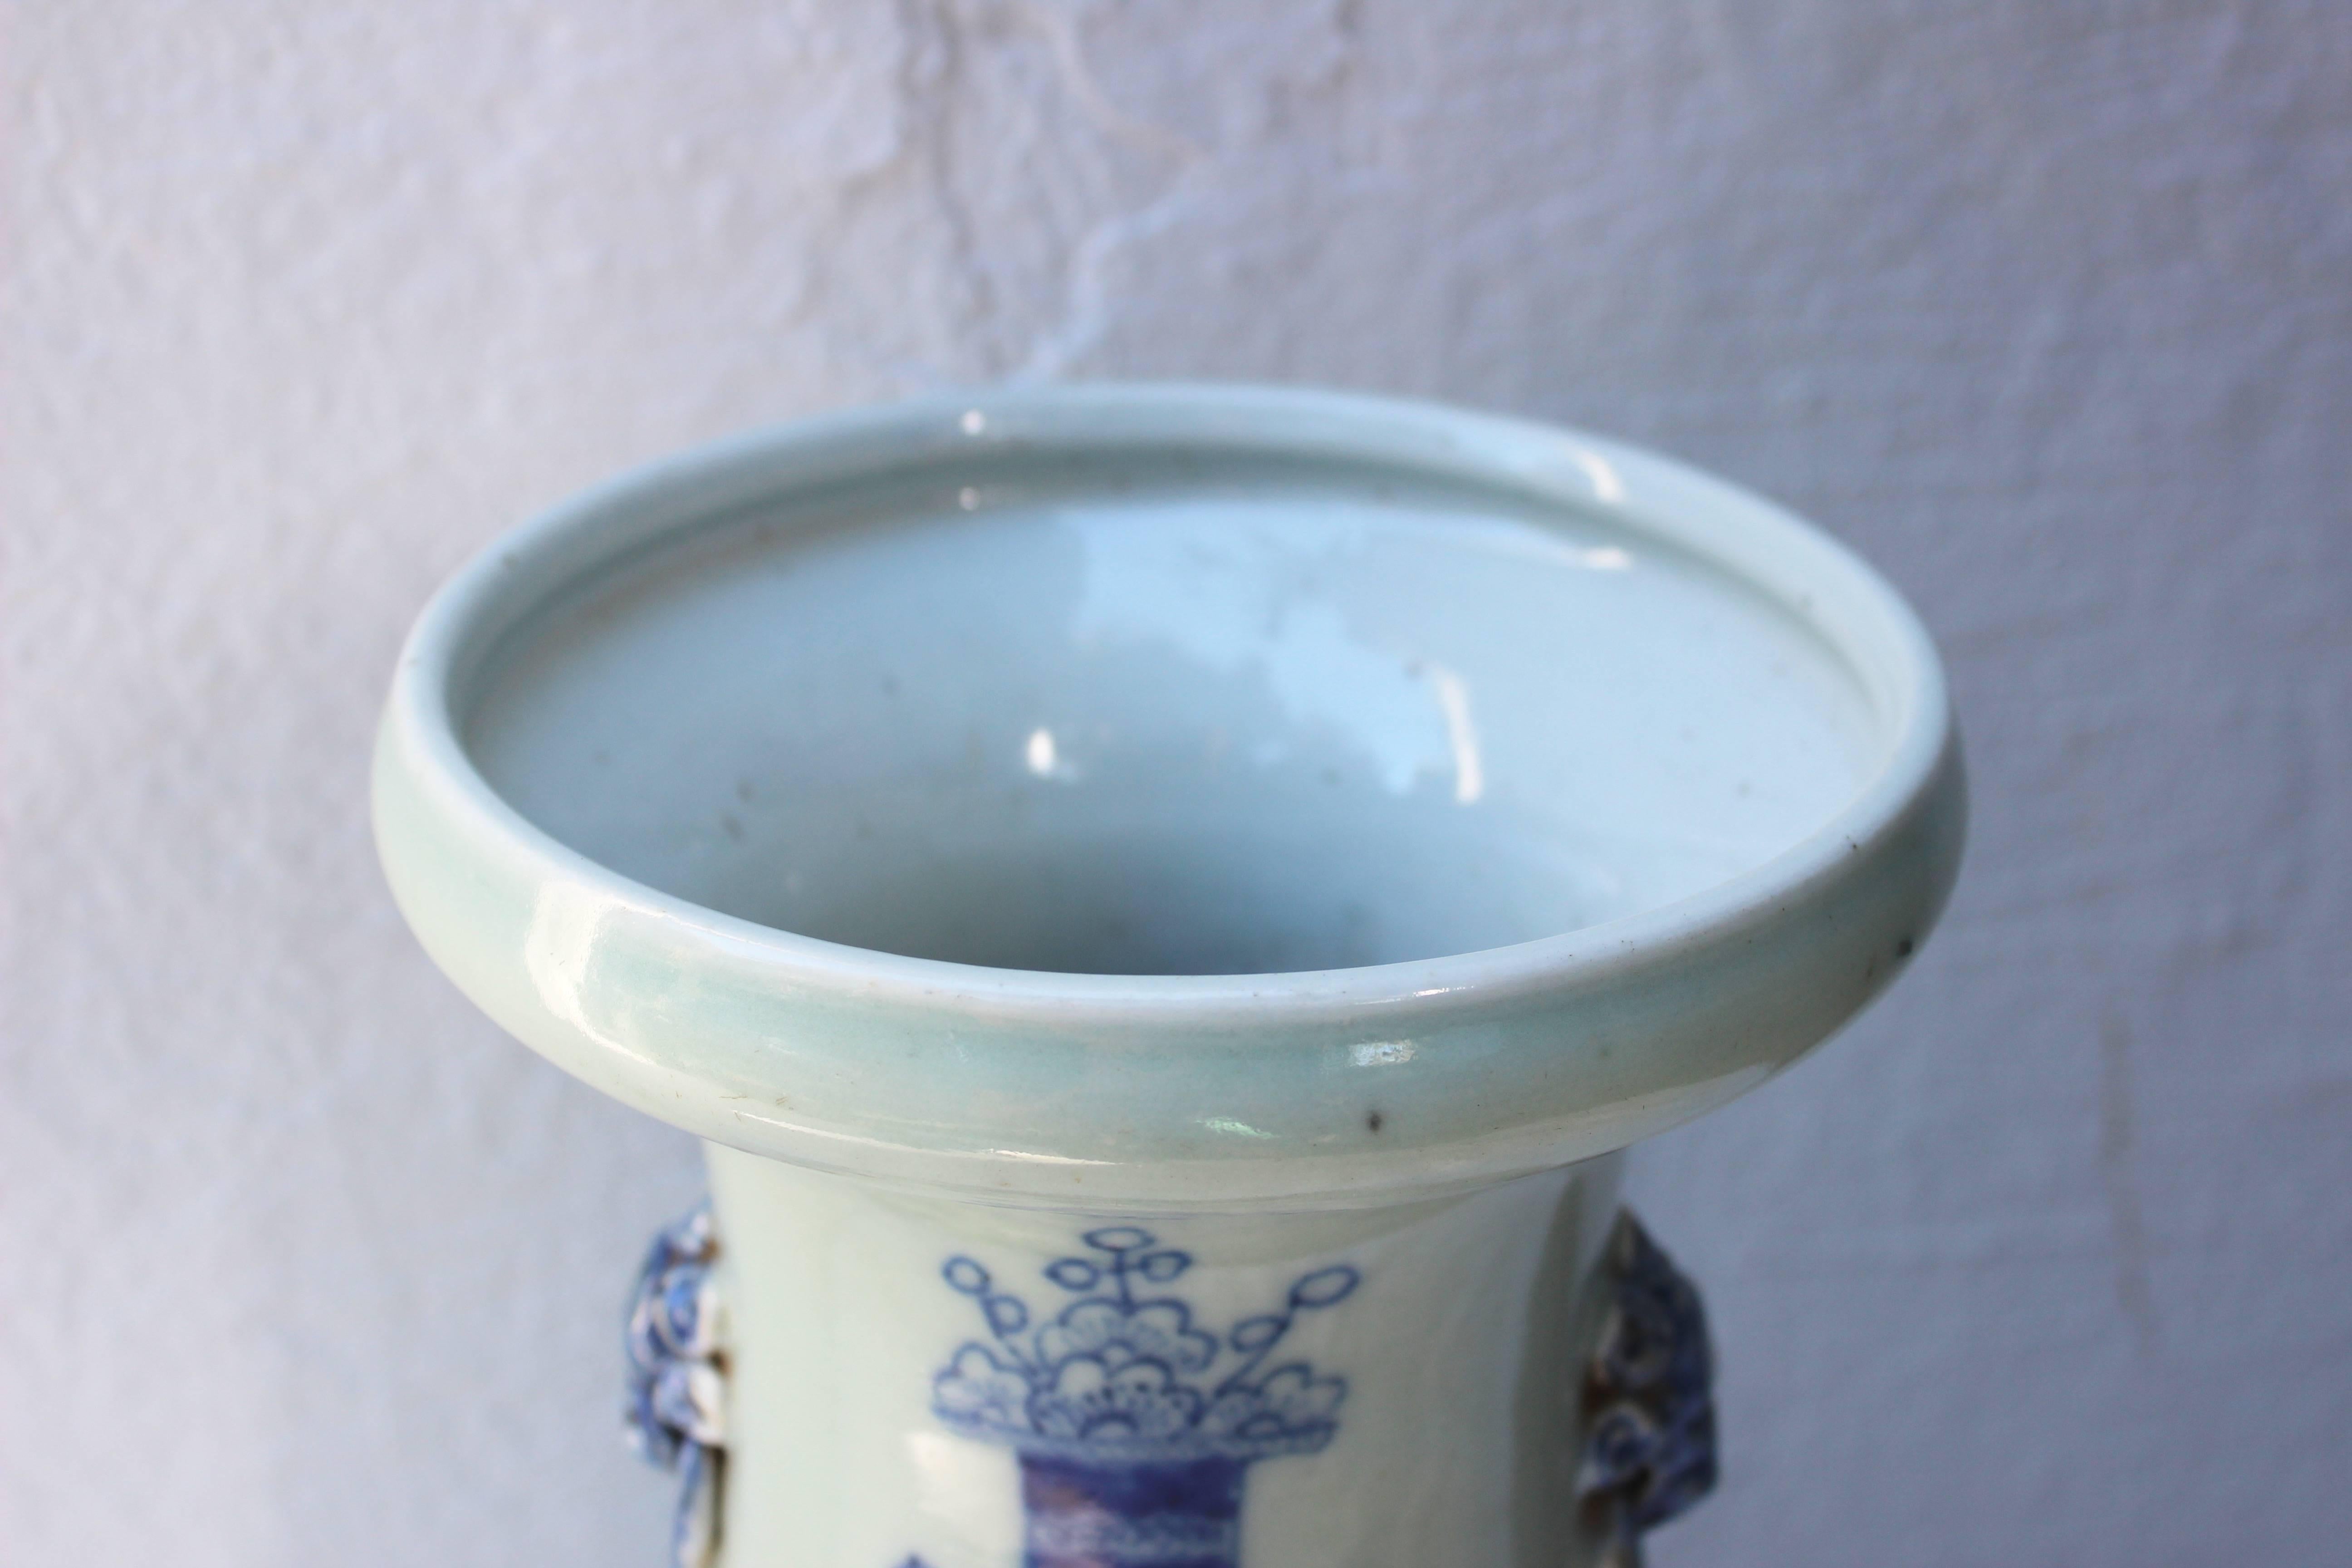 Chinesische balusterförmige Vase in Blau und Weiß.